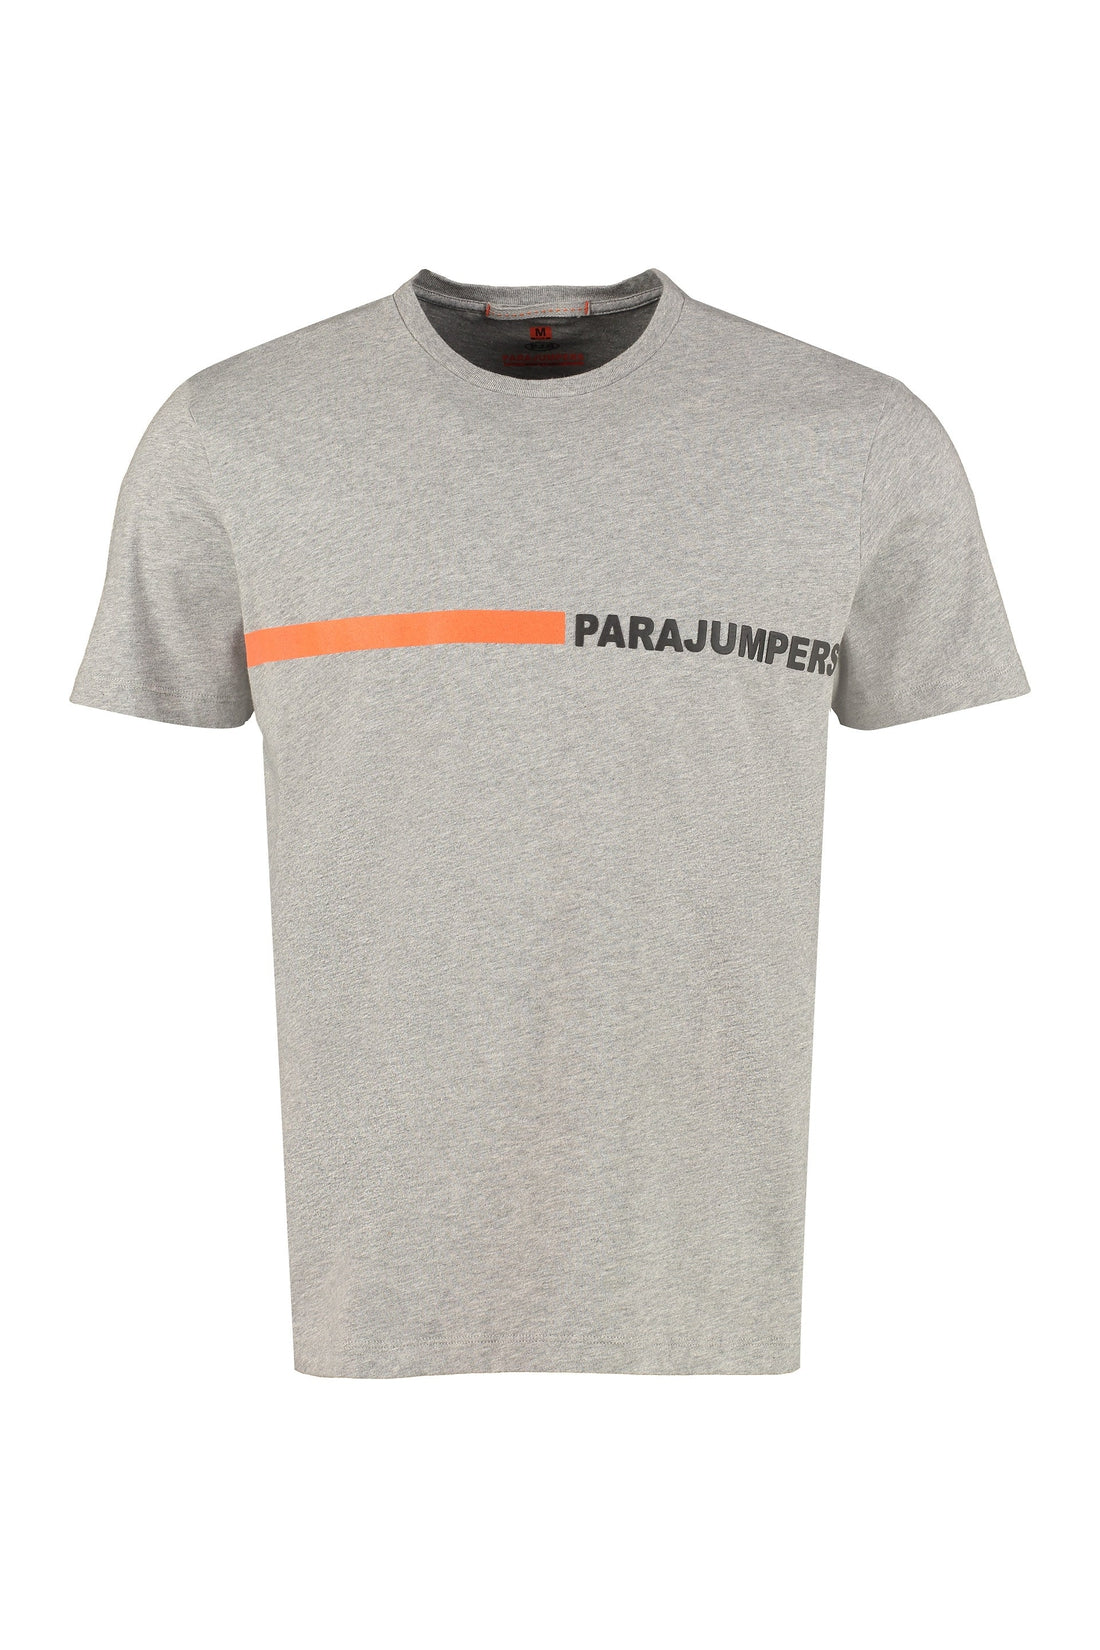 Parajumpers-OUTLET-SALE-Logo print cotton t-shirt-ARCHIVIST